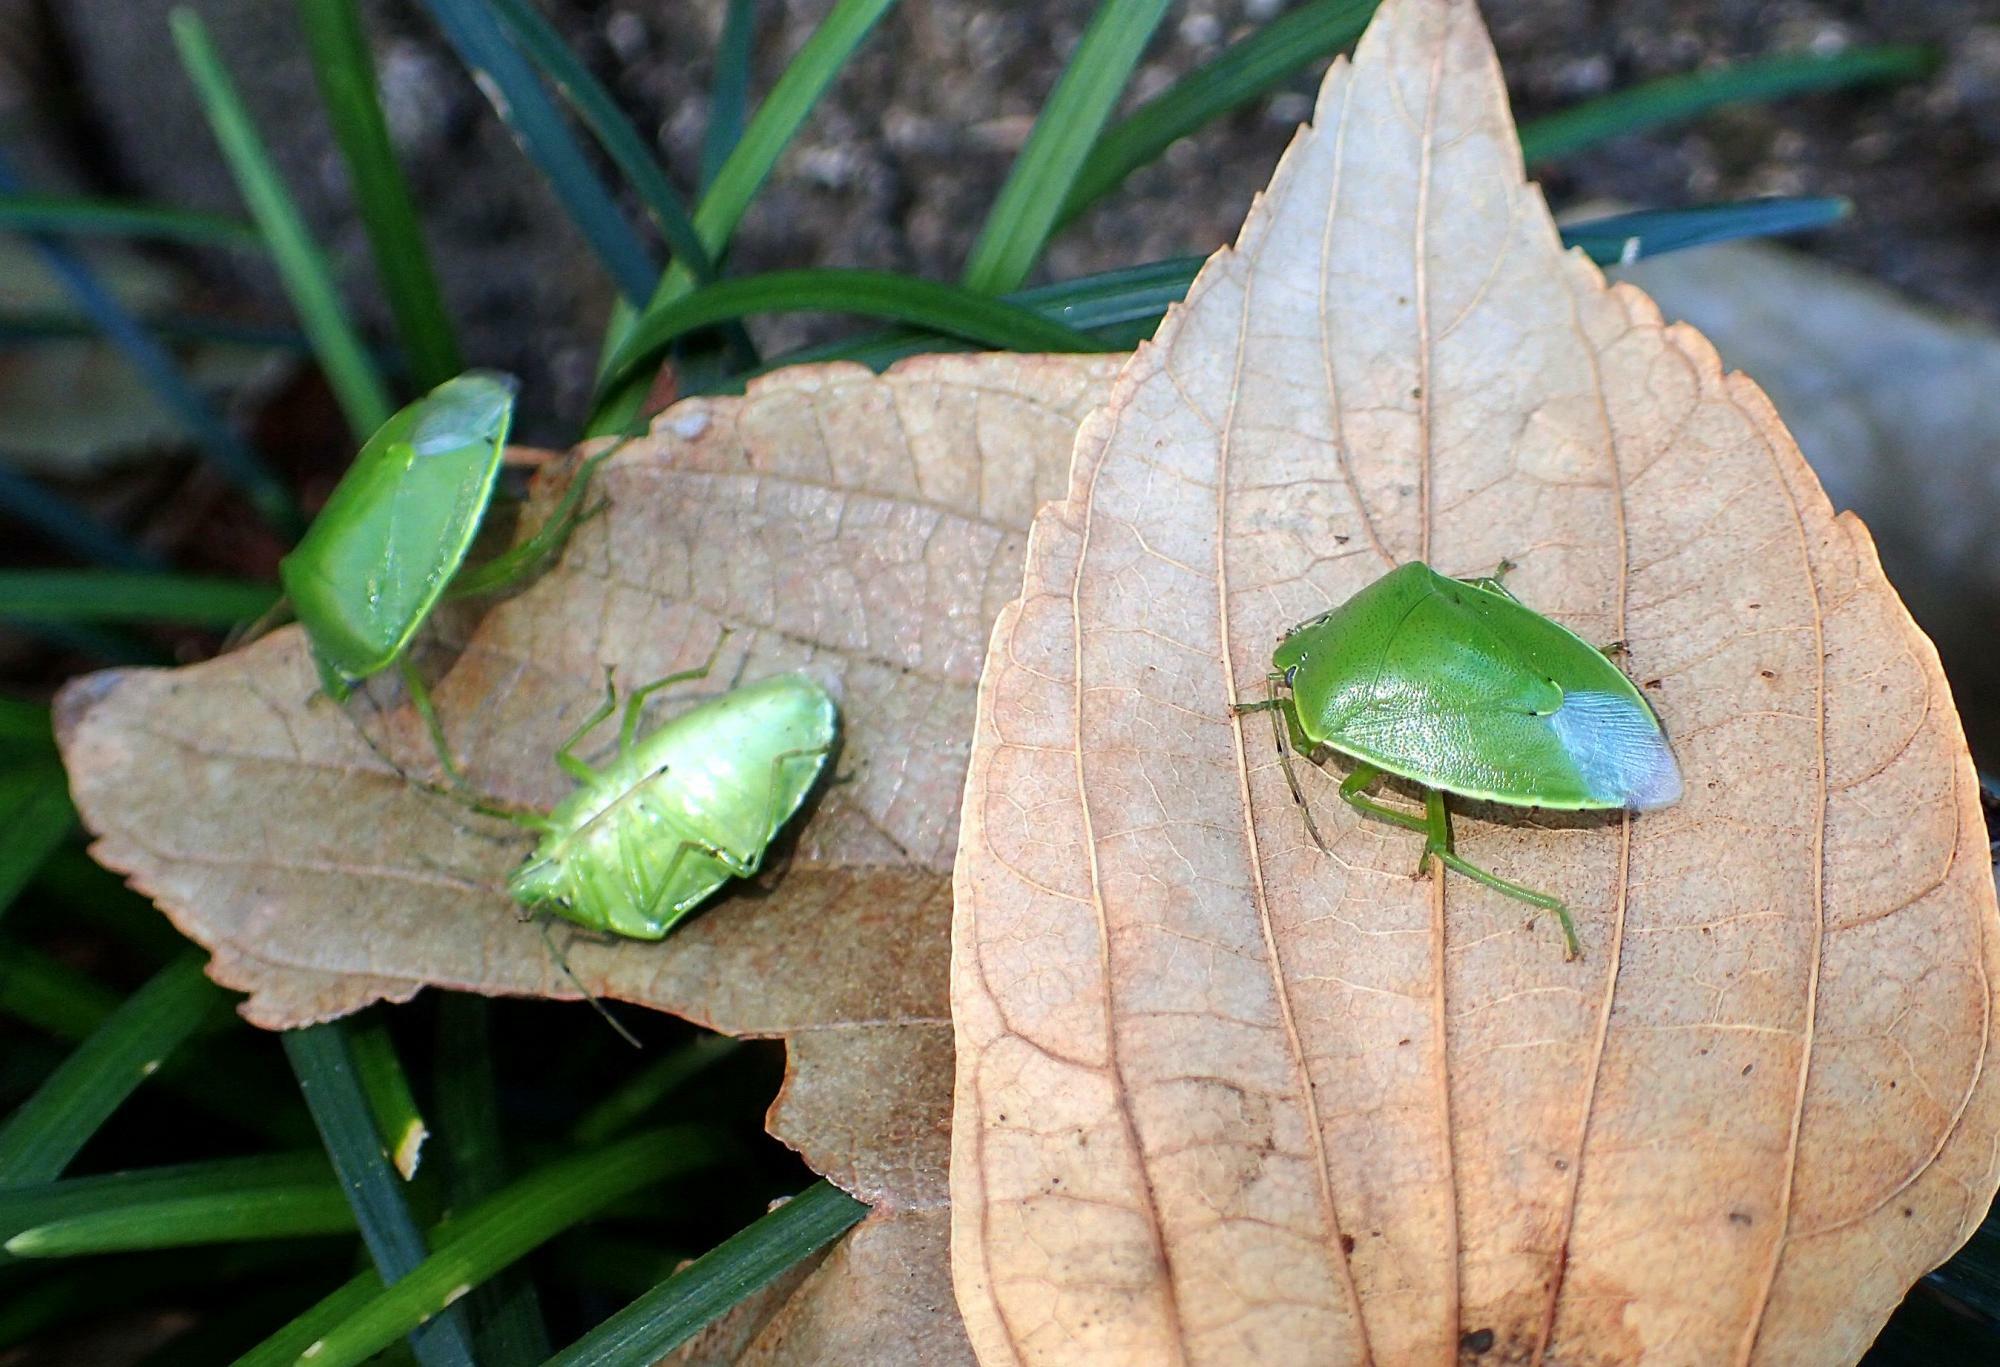 オオムラサキの越冬幼虫を探してエノキの落ち葉をひっくり返したら、出てきたのはツヤアオカメムシばかり。